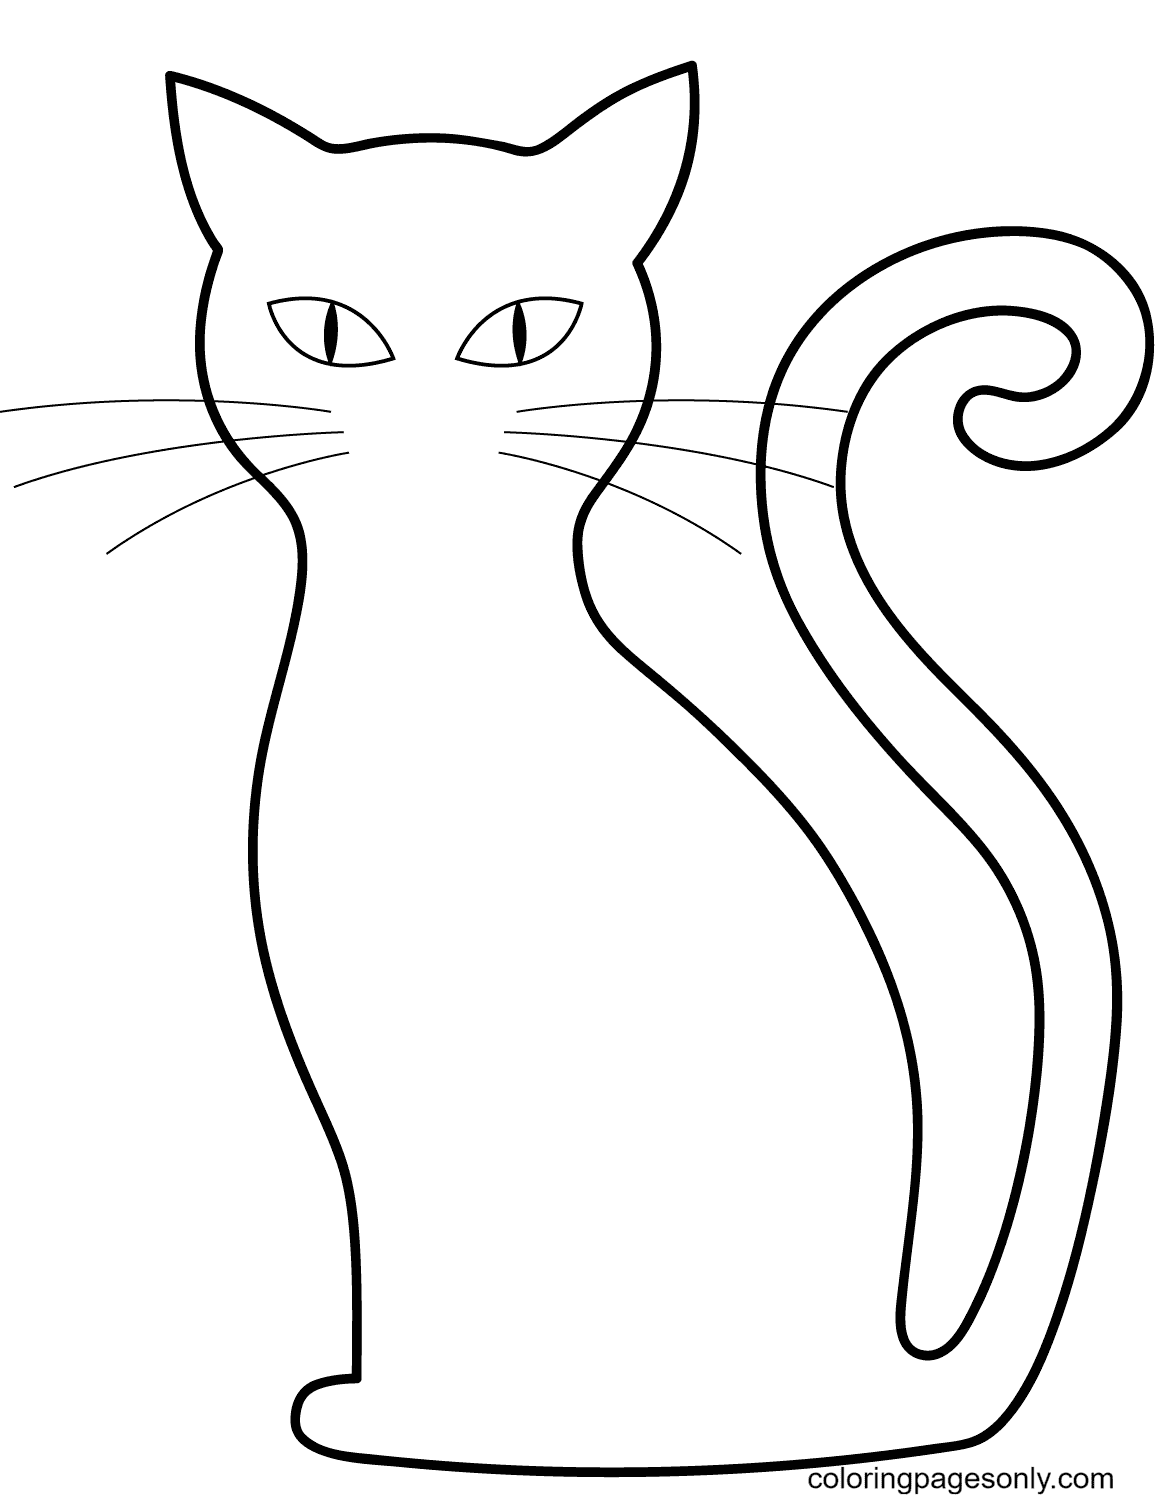 Контур кошки для рисования